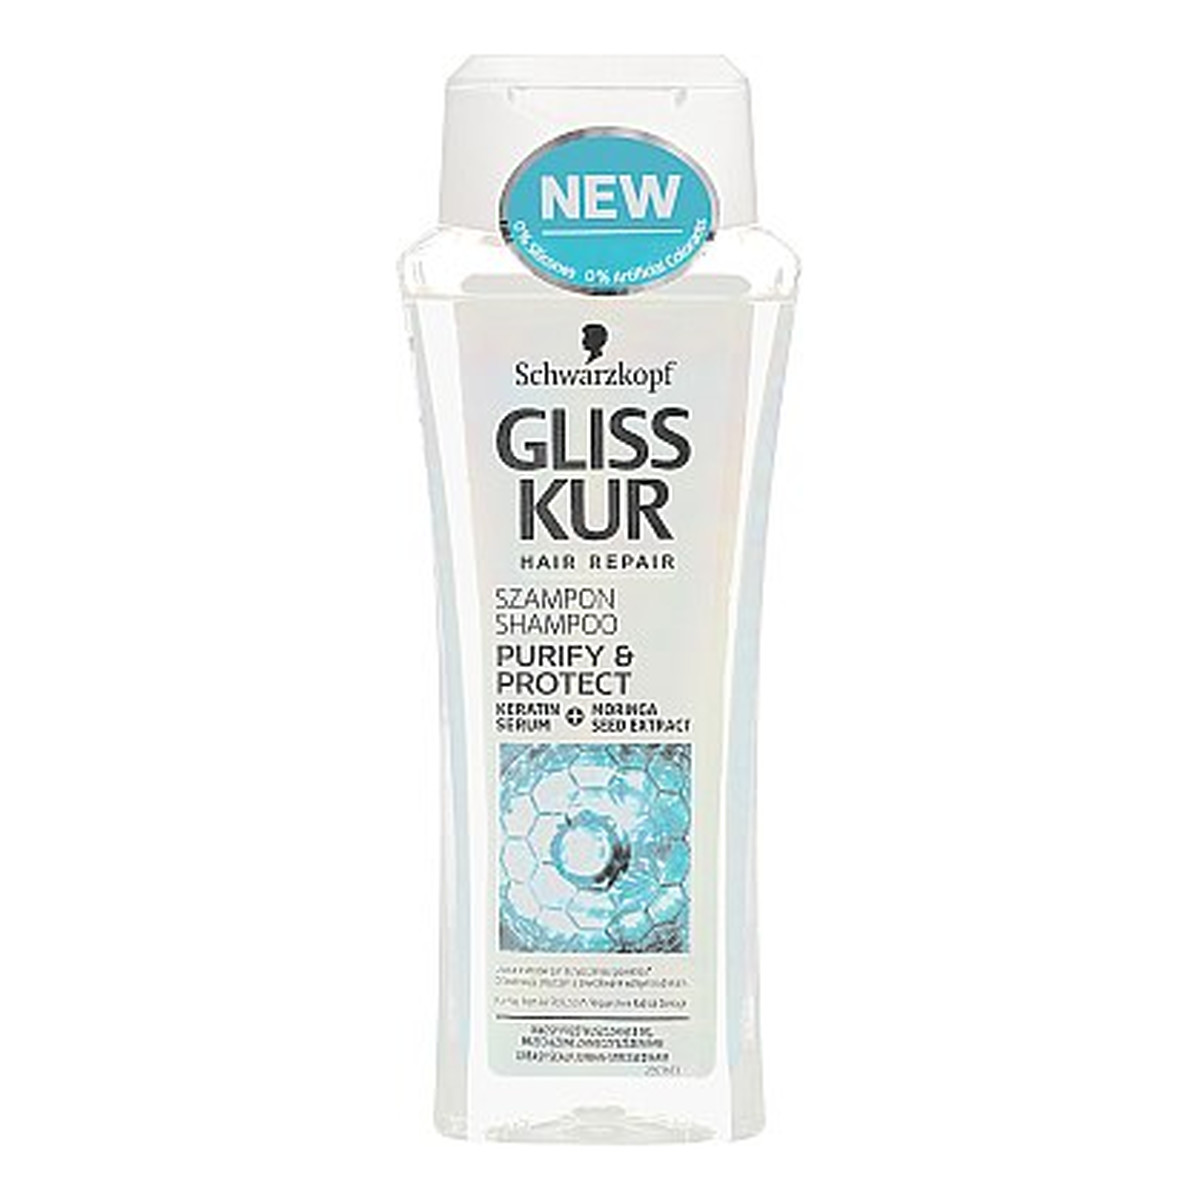 szampon gliss kur purify protect opinie